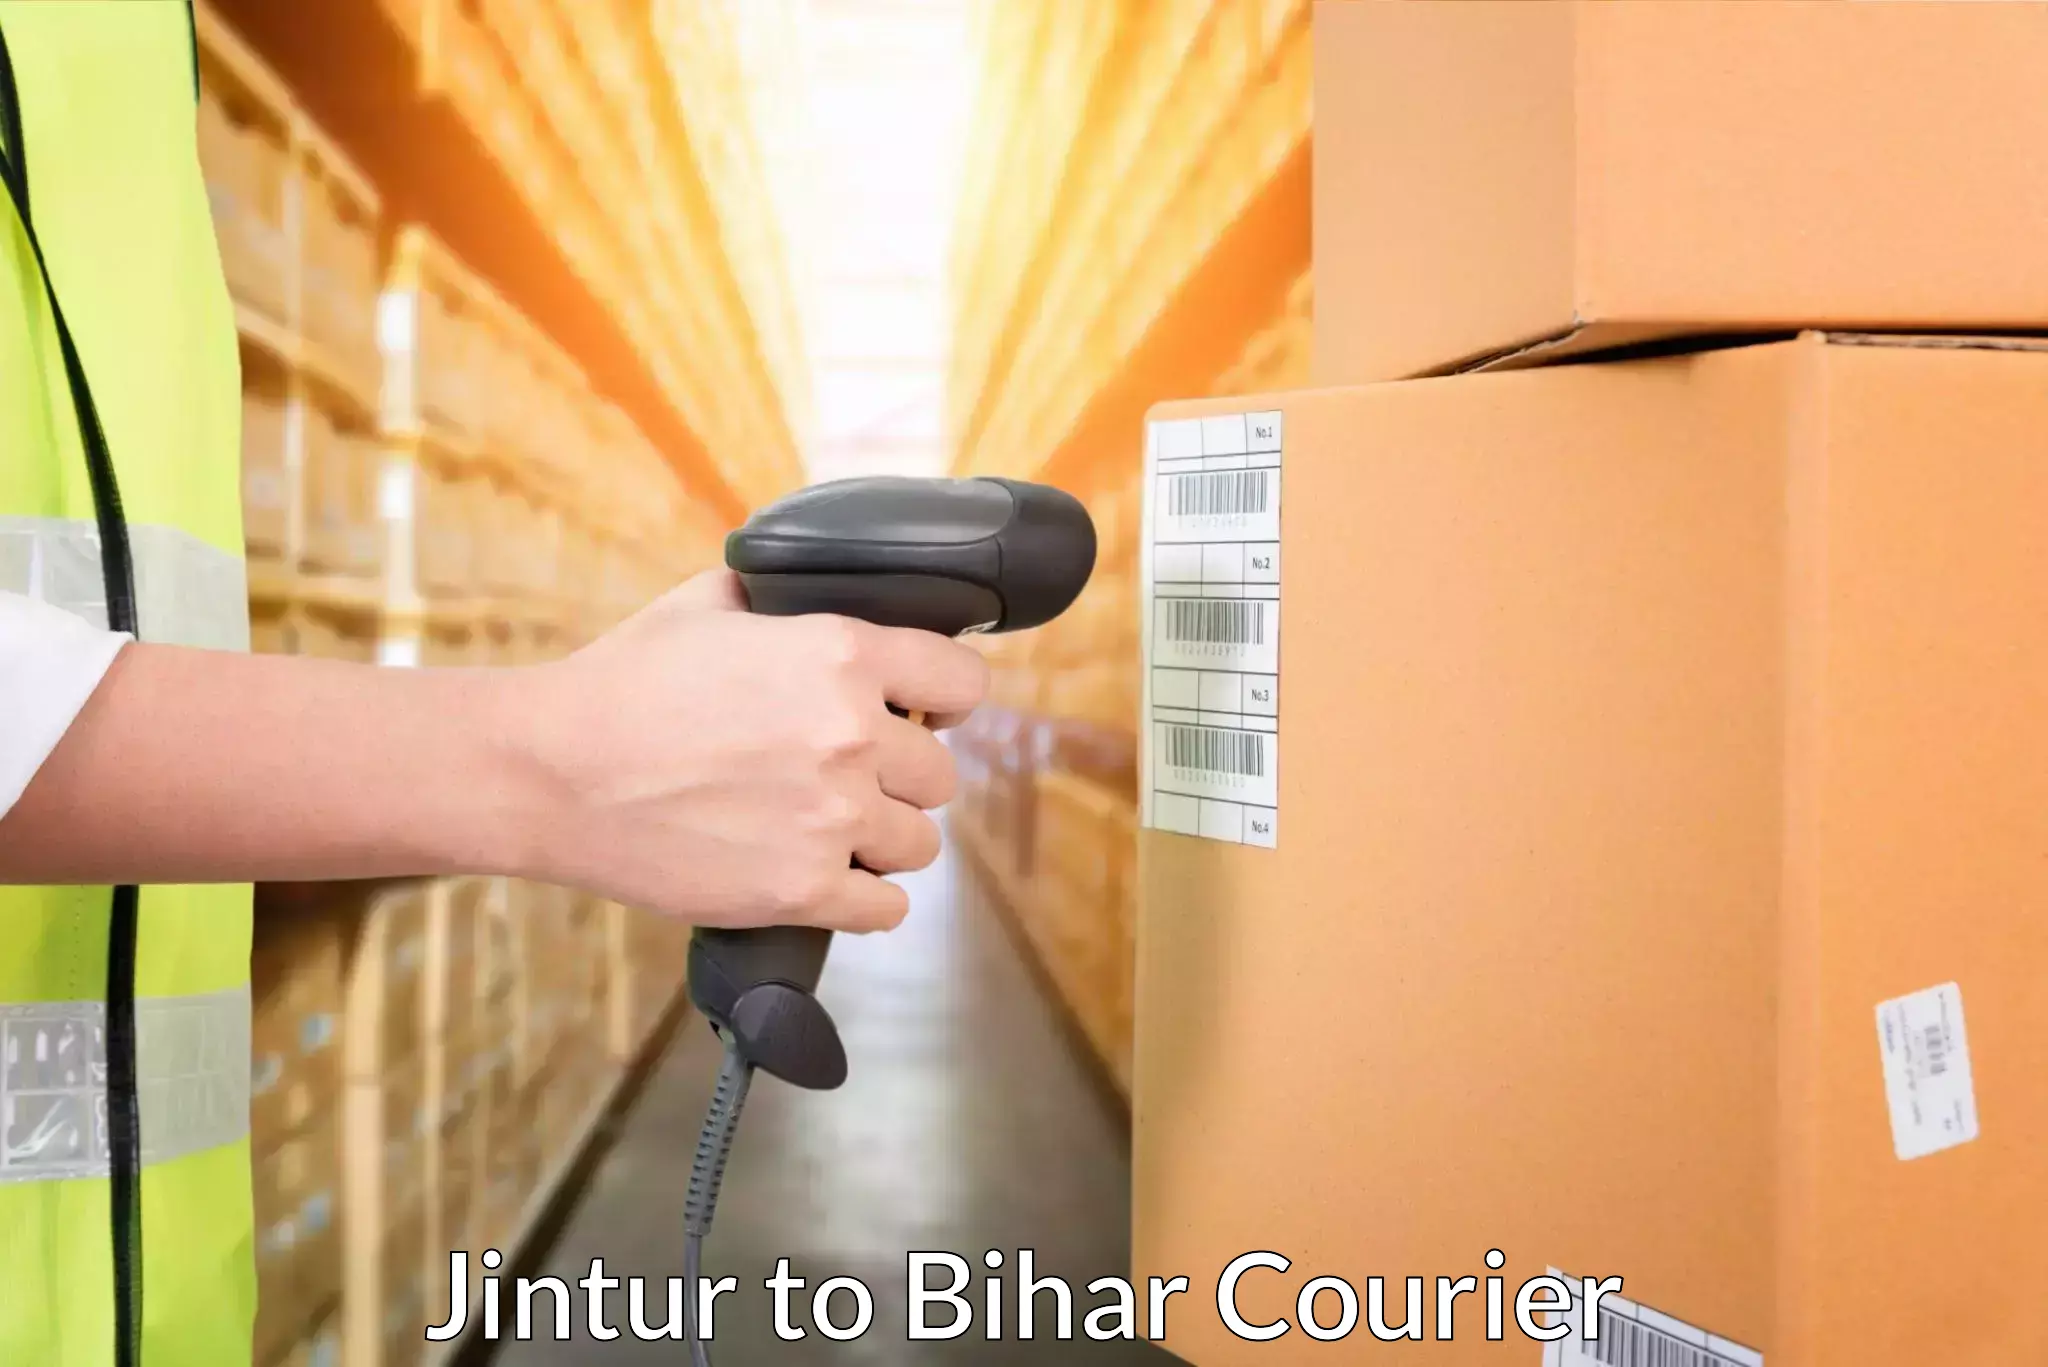 International courier rates Jintur to Jiwdhara